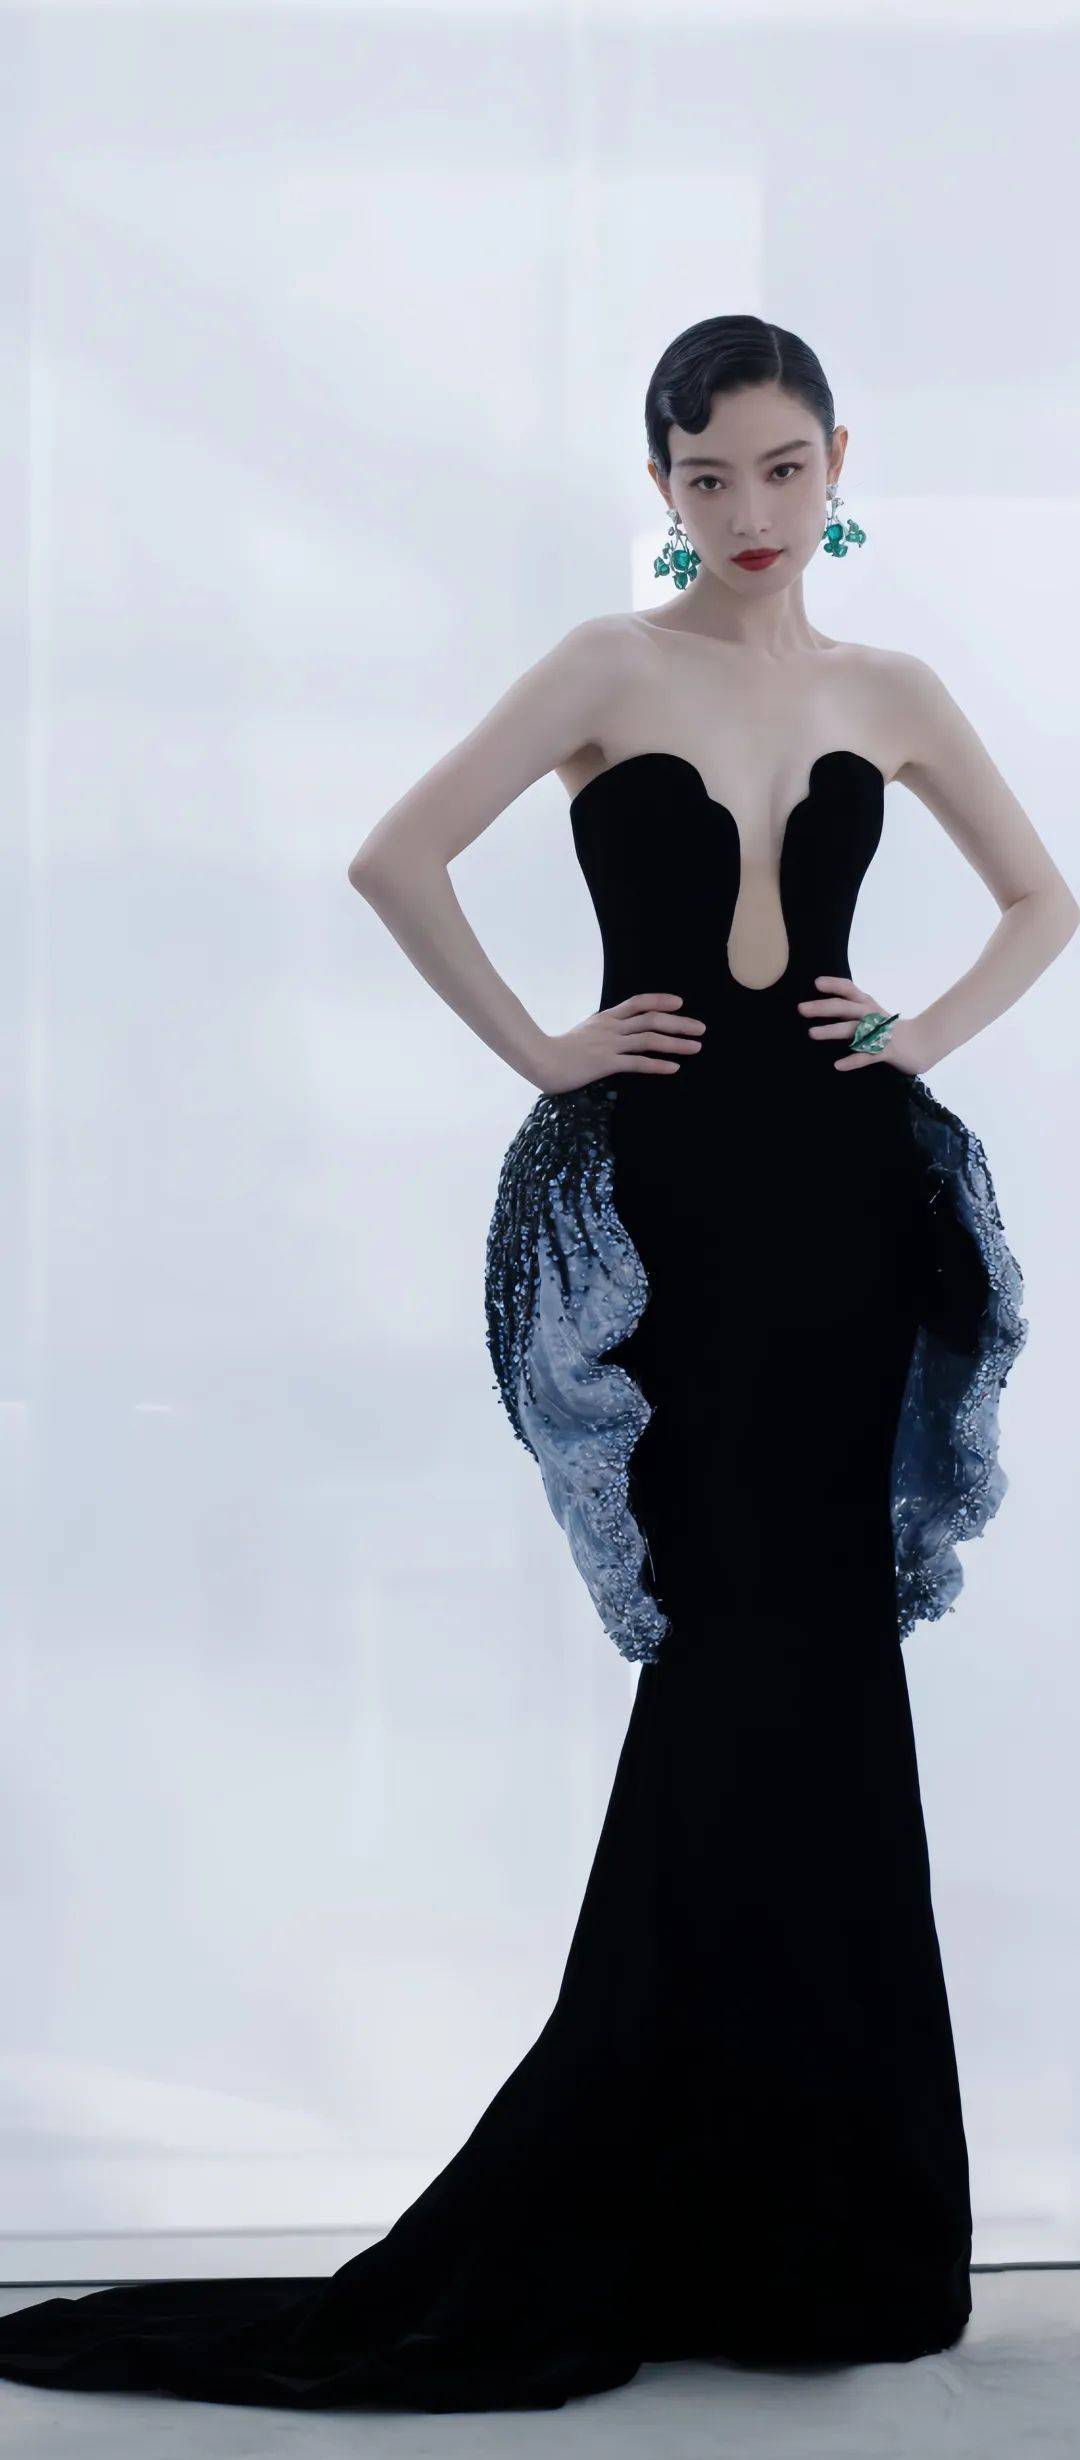 倪妮黑色丝绒长裙,身姿绰约,造型如轻盈舞动的蝴蝶